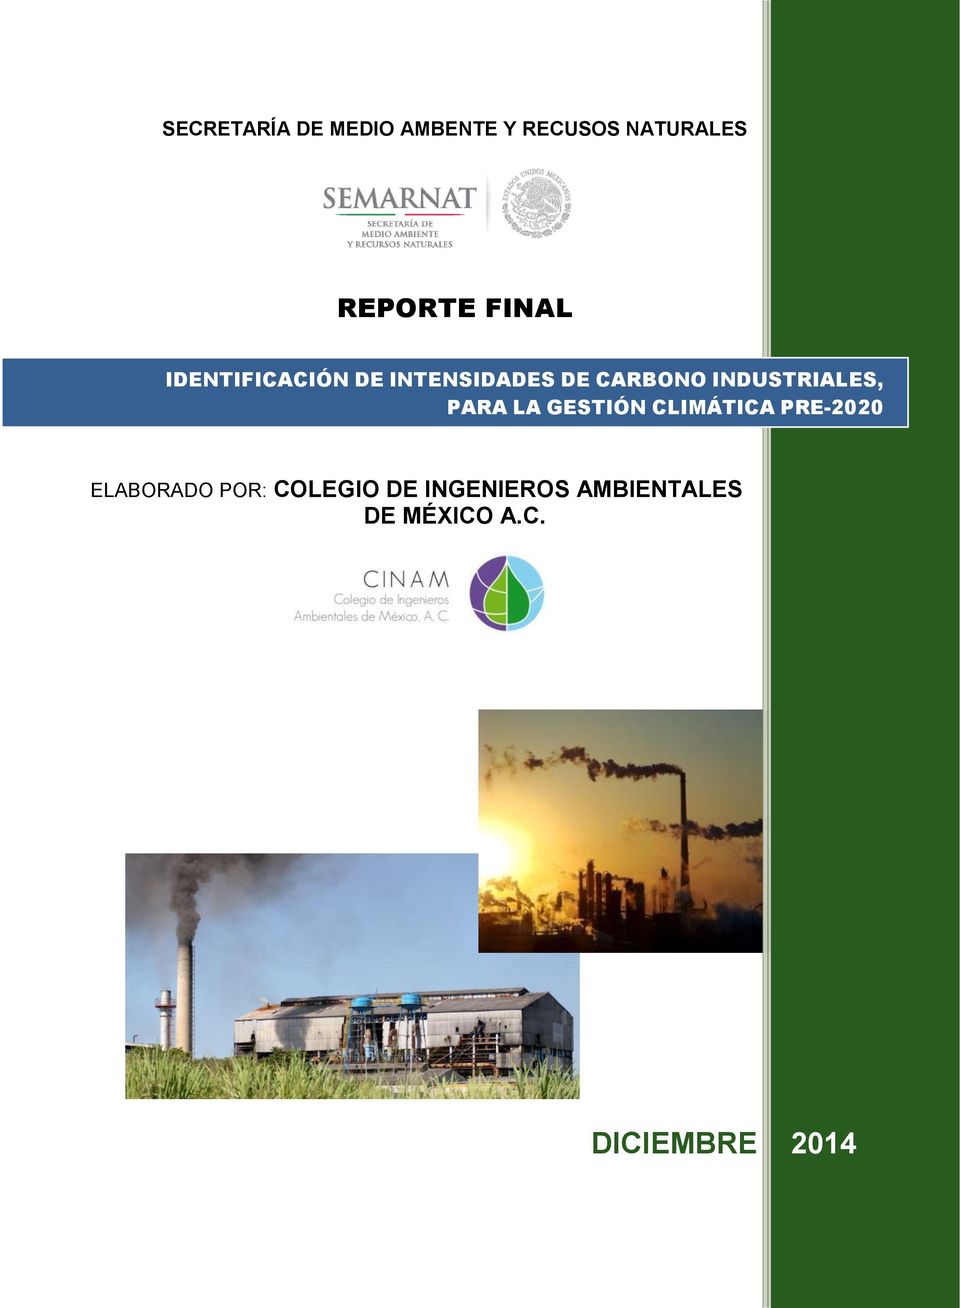 CARBONO INDUSTRIALES, ELABORADO POR: COLEGIO DE